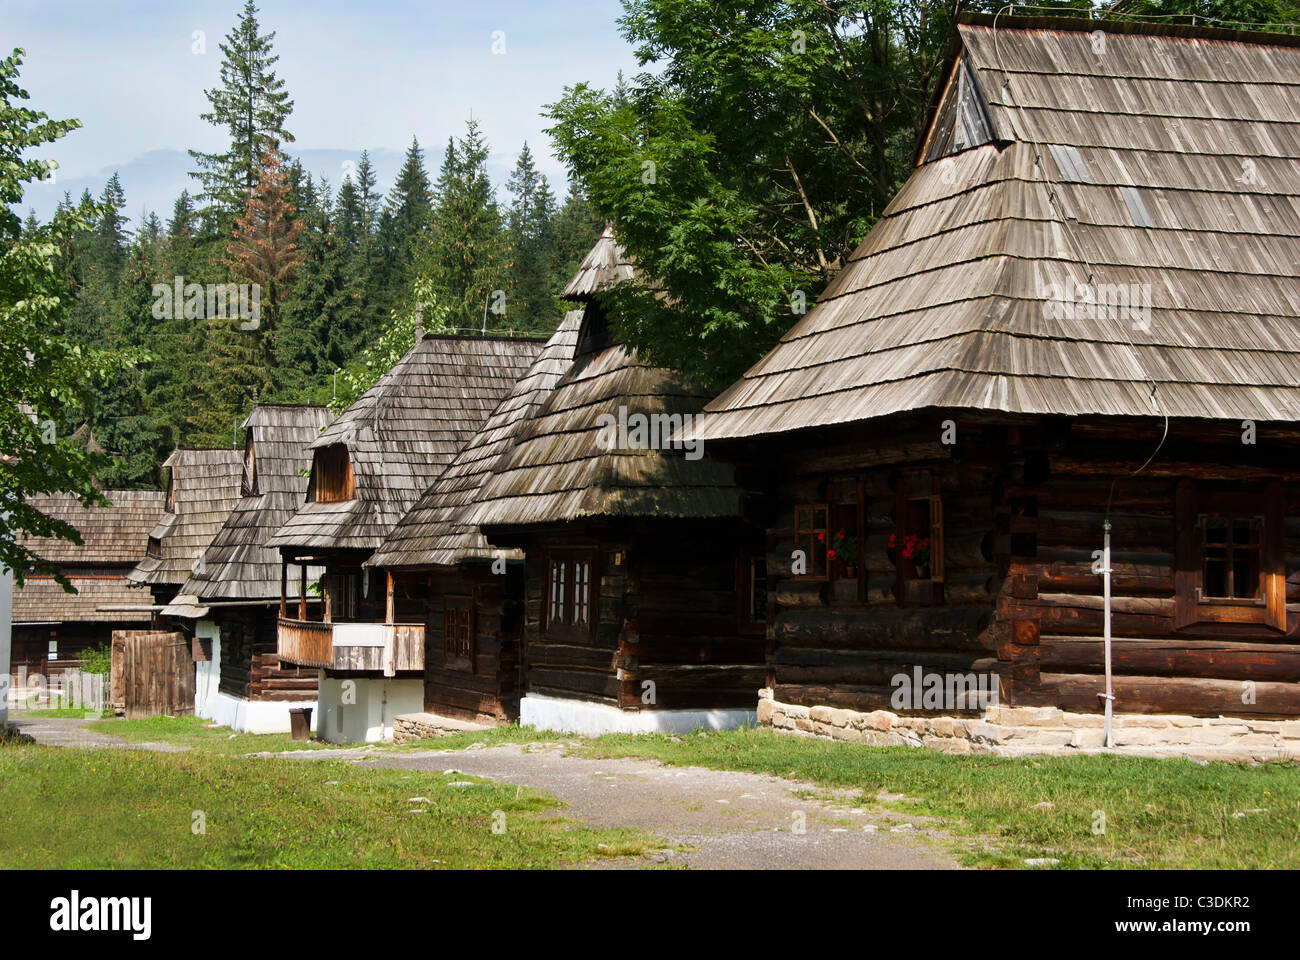 Reihe von traditionellen Holzhäusern mit Holzdach und Wald im Hintergrund. Zentral-Europa - Slowakei Stockfoto